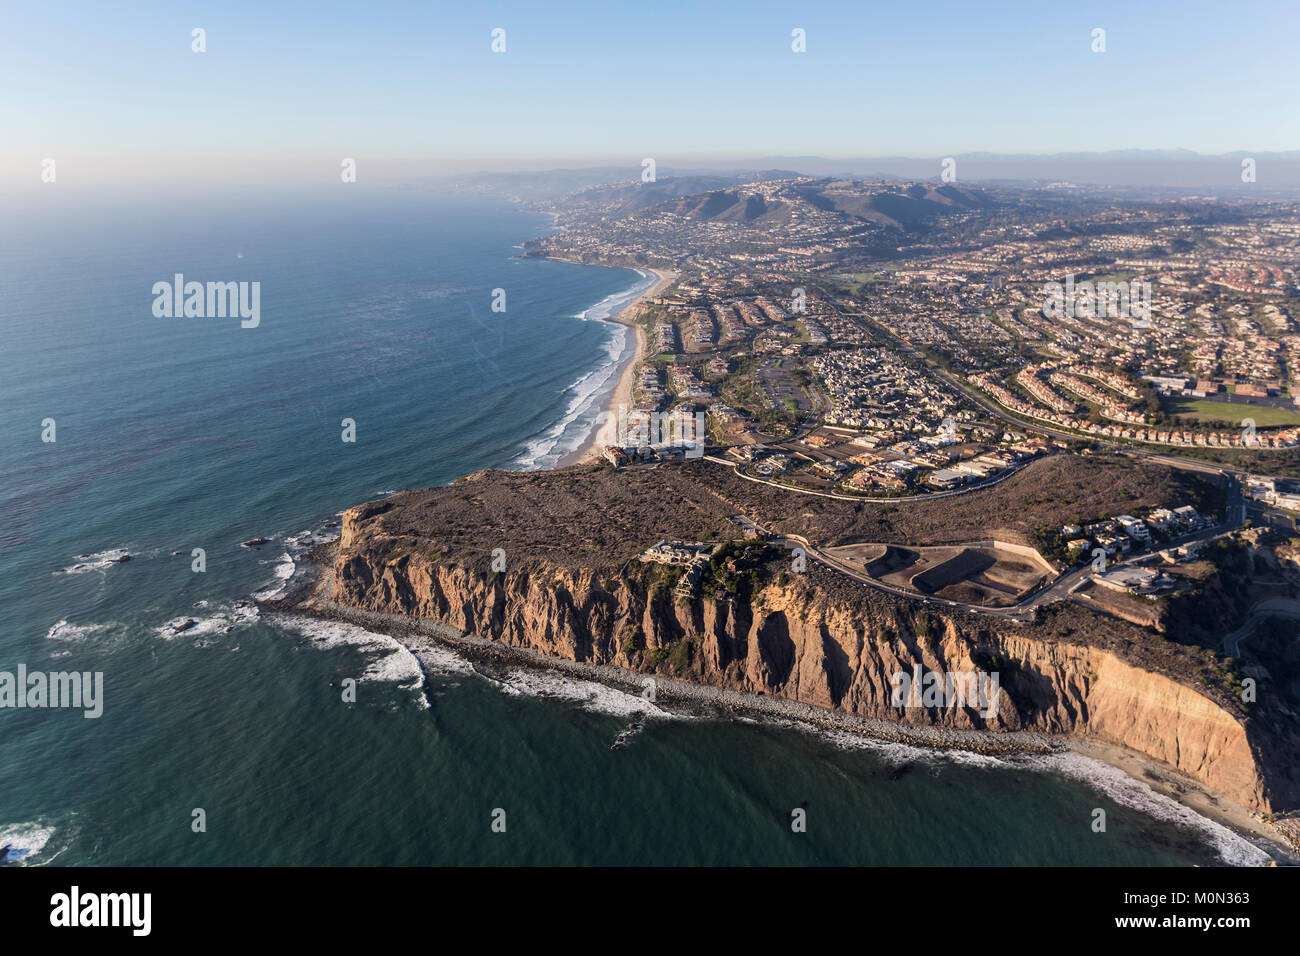 Vista aerea di Dana Point in Orange County in California del Sud Costa dell'oceano pacifico. Foto Stock